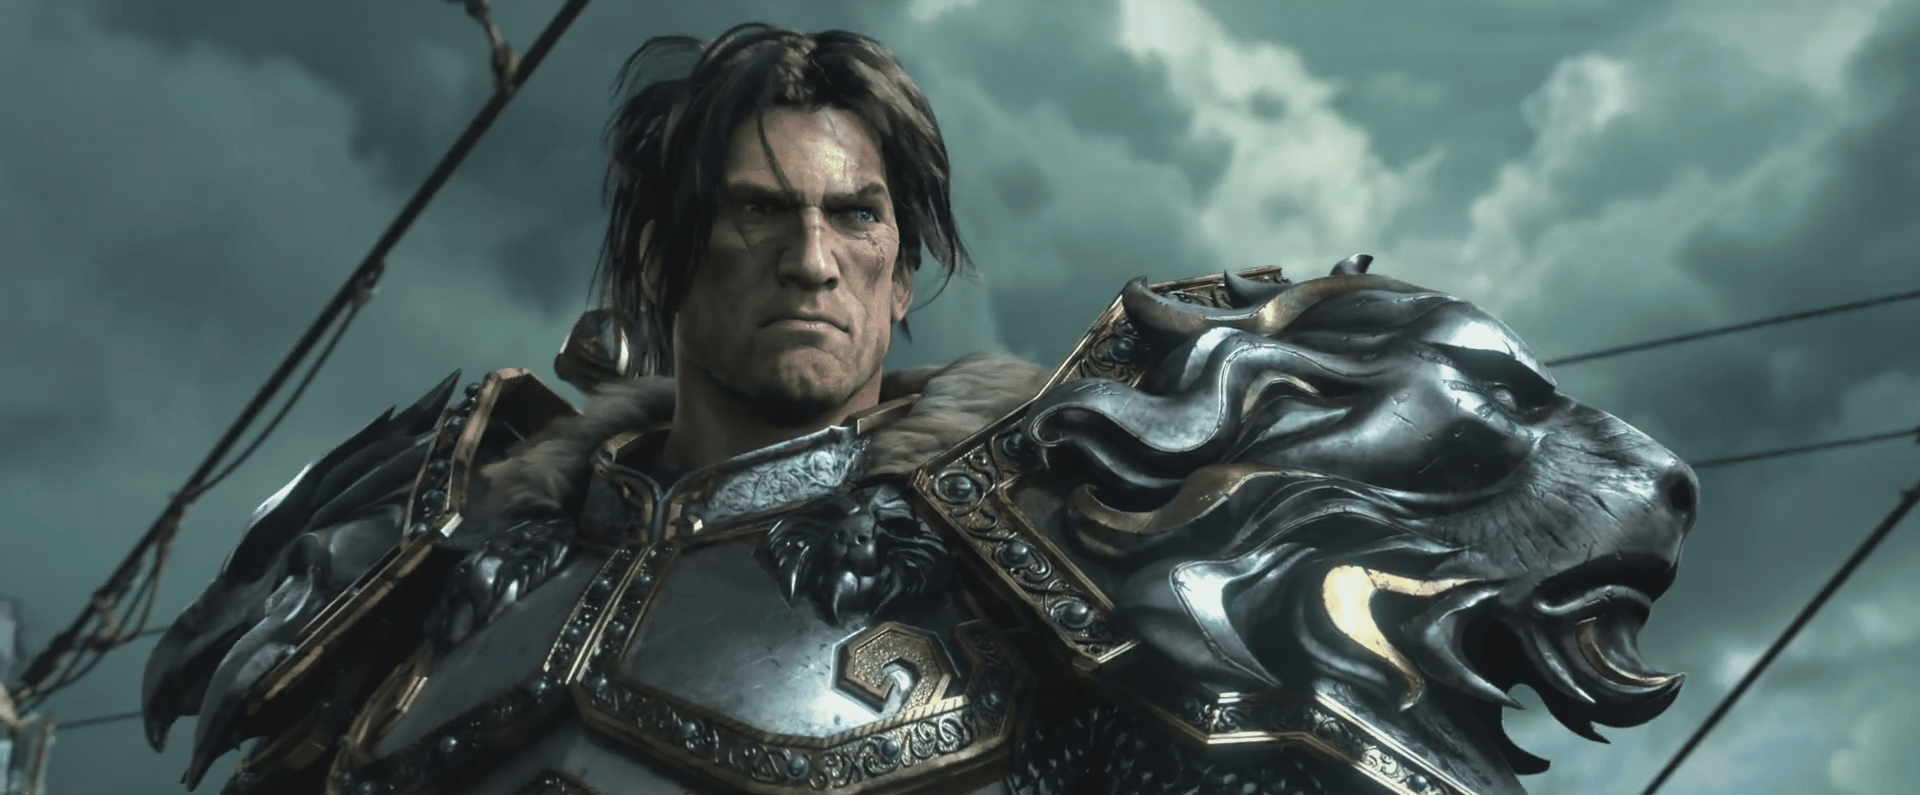 Varian Wrynn world of Warcraft